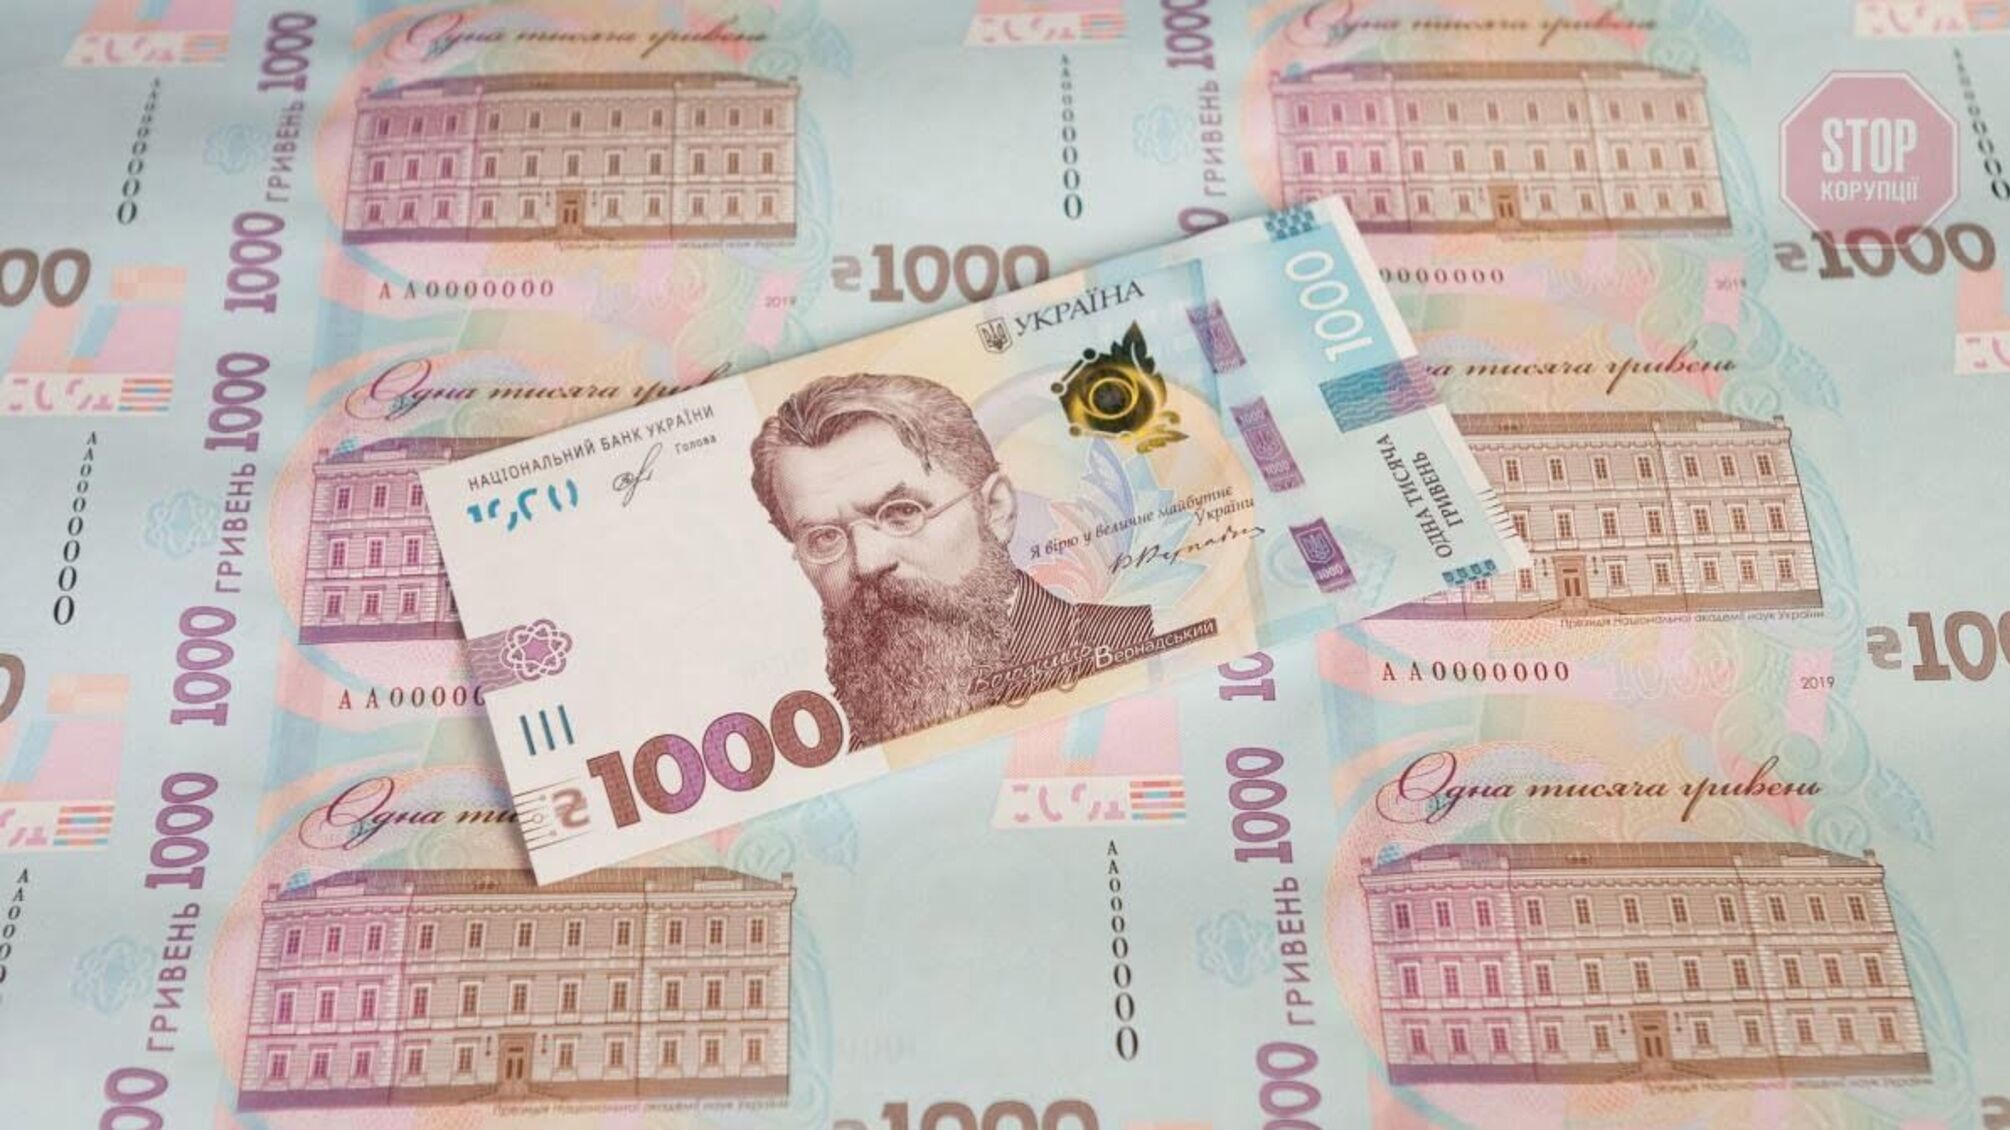 Банкнота в 1000 грн: Нацбанк запустив купюру найвищого номіналу (фото)